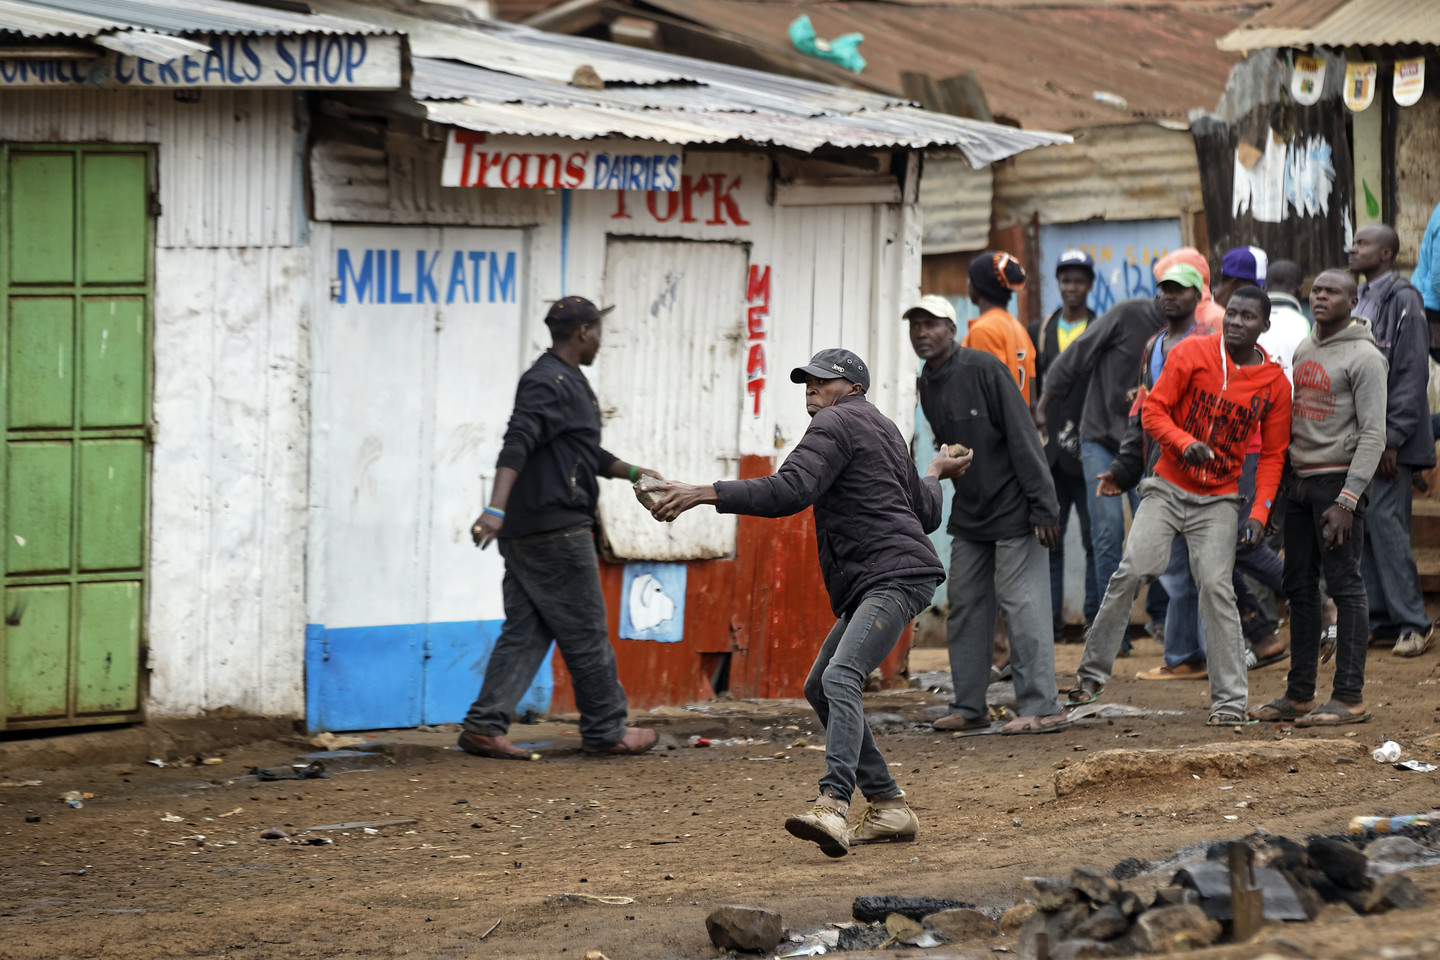  Kenijoje dėl rinkimų prasiveržė smurtas.<br> AP nuotr.